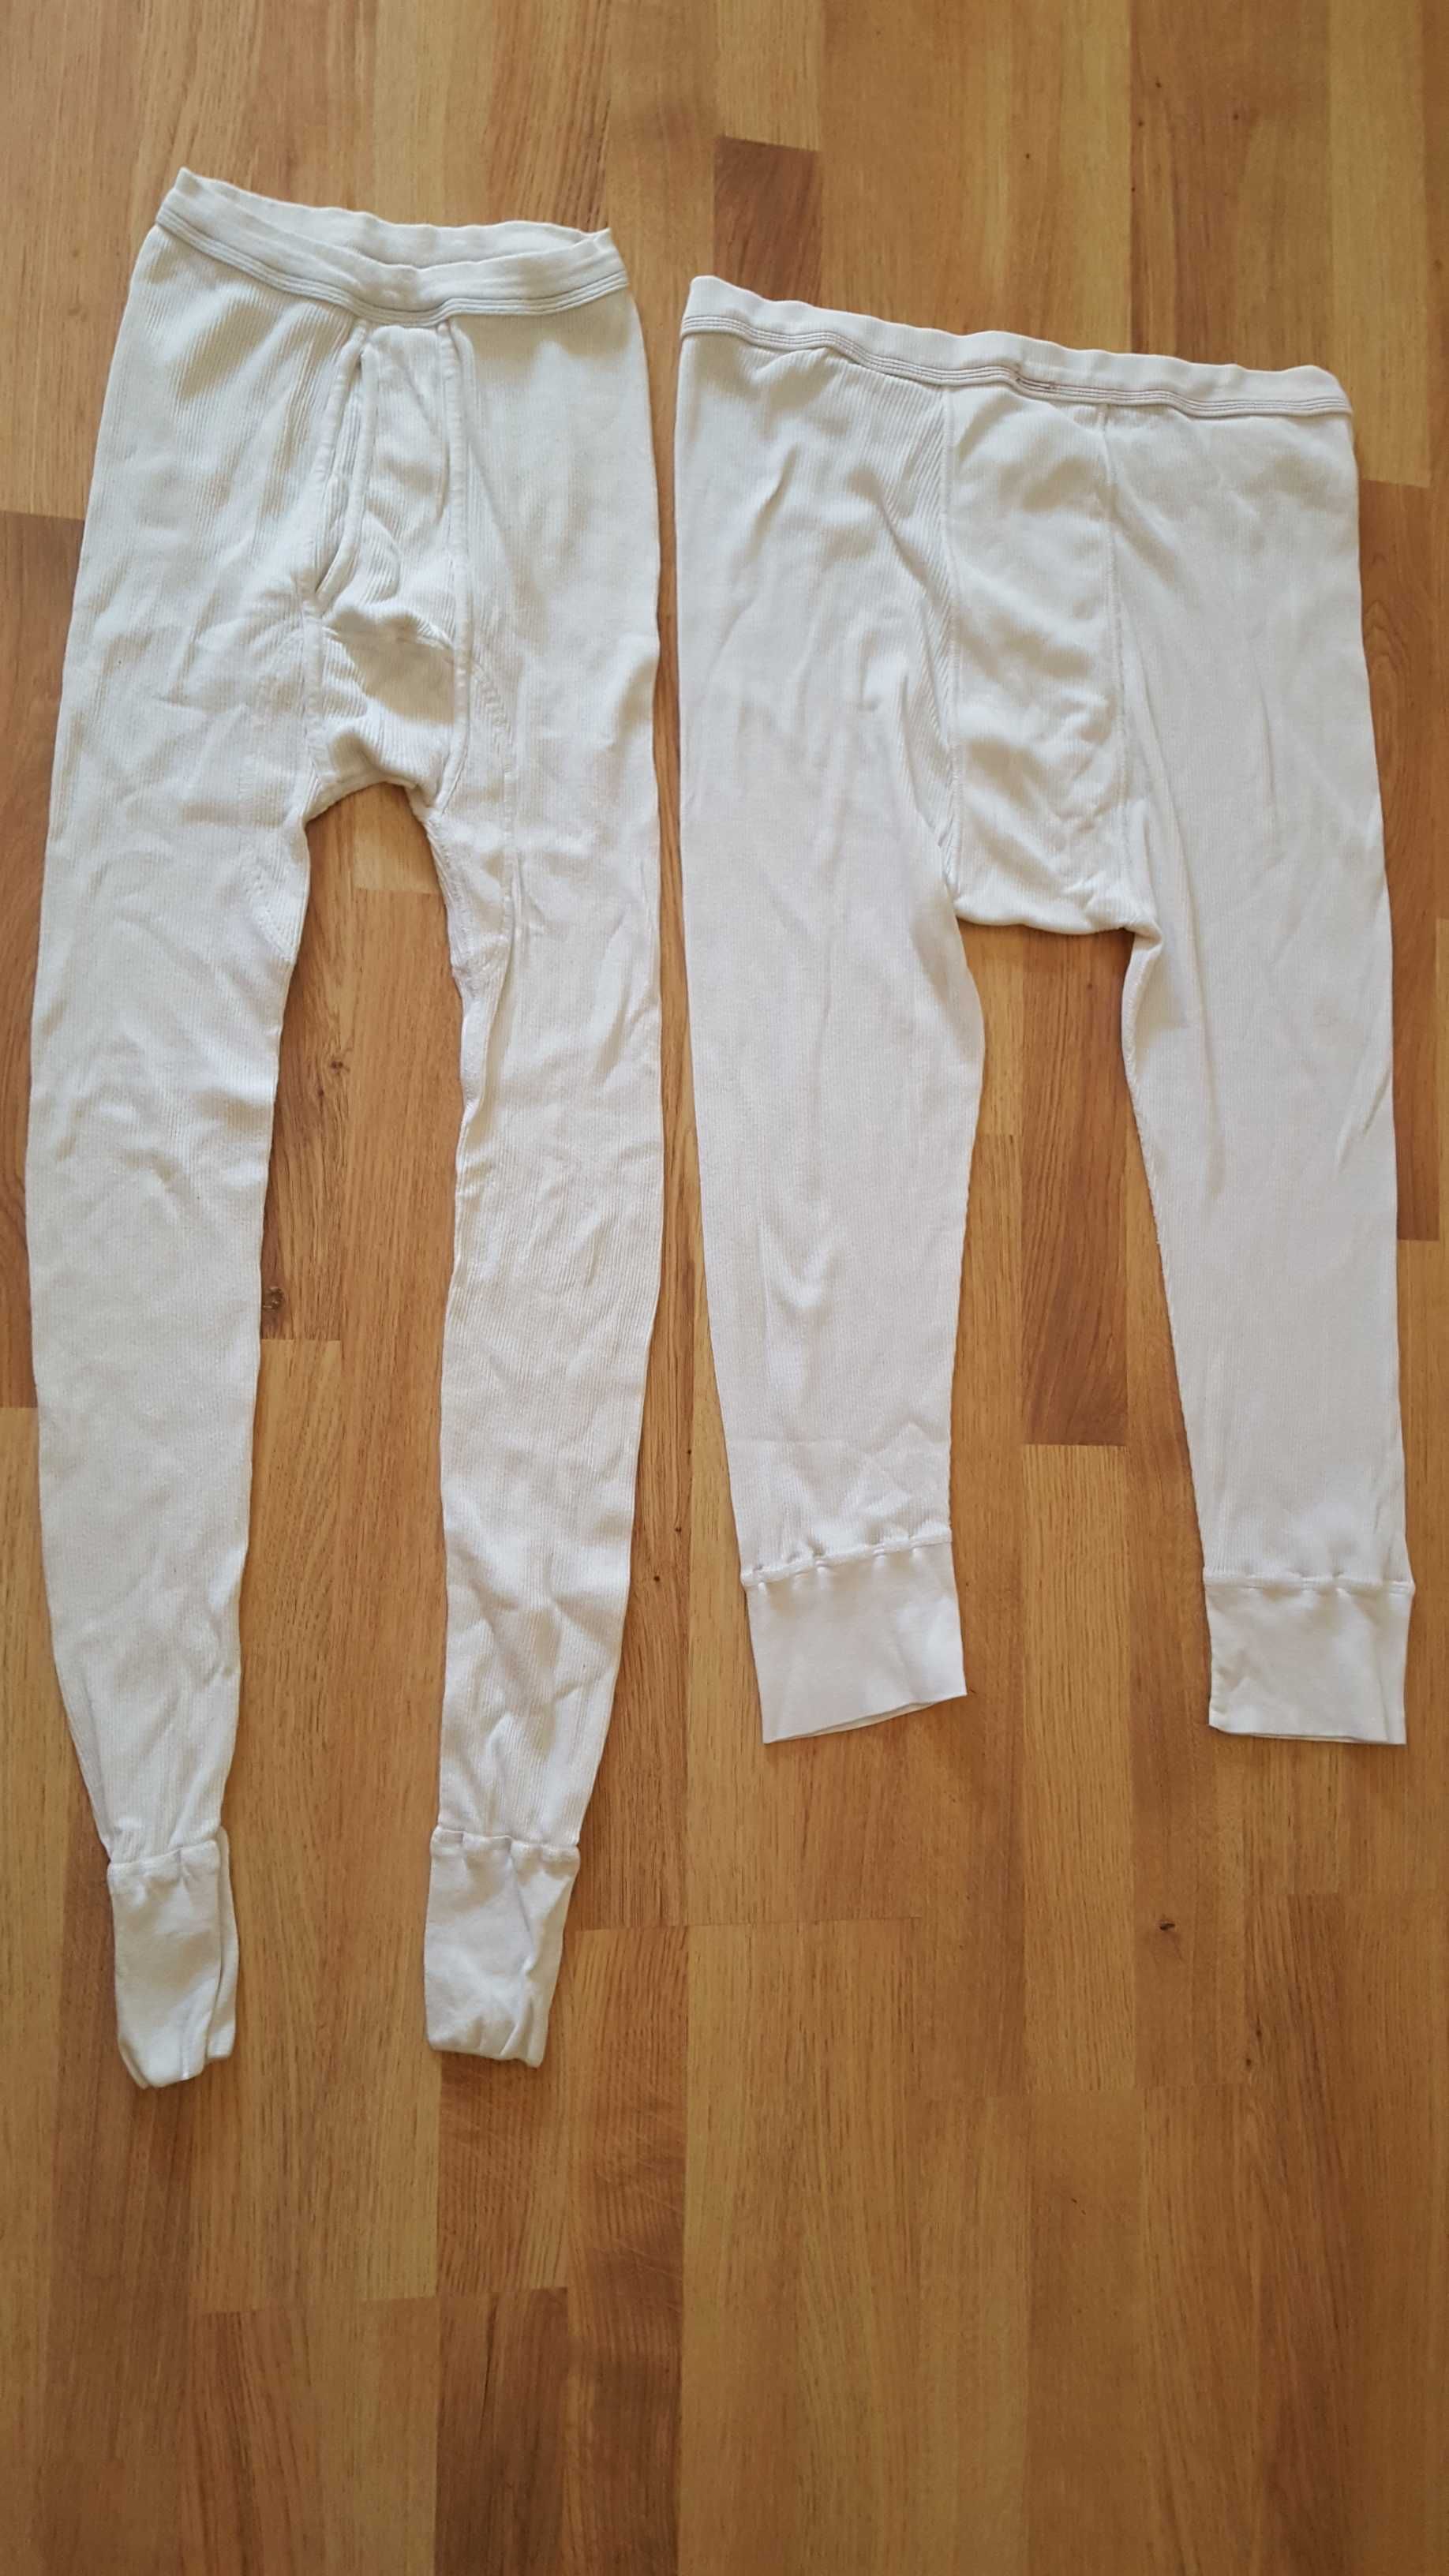 Białe kalesony męskie długie i krótsze - 2 pary, bawełna